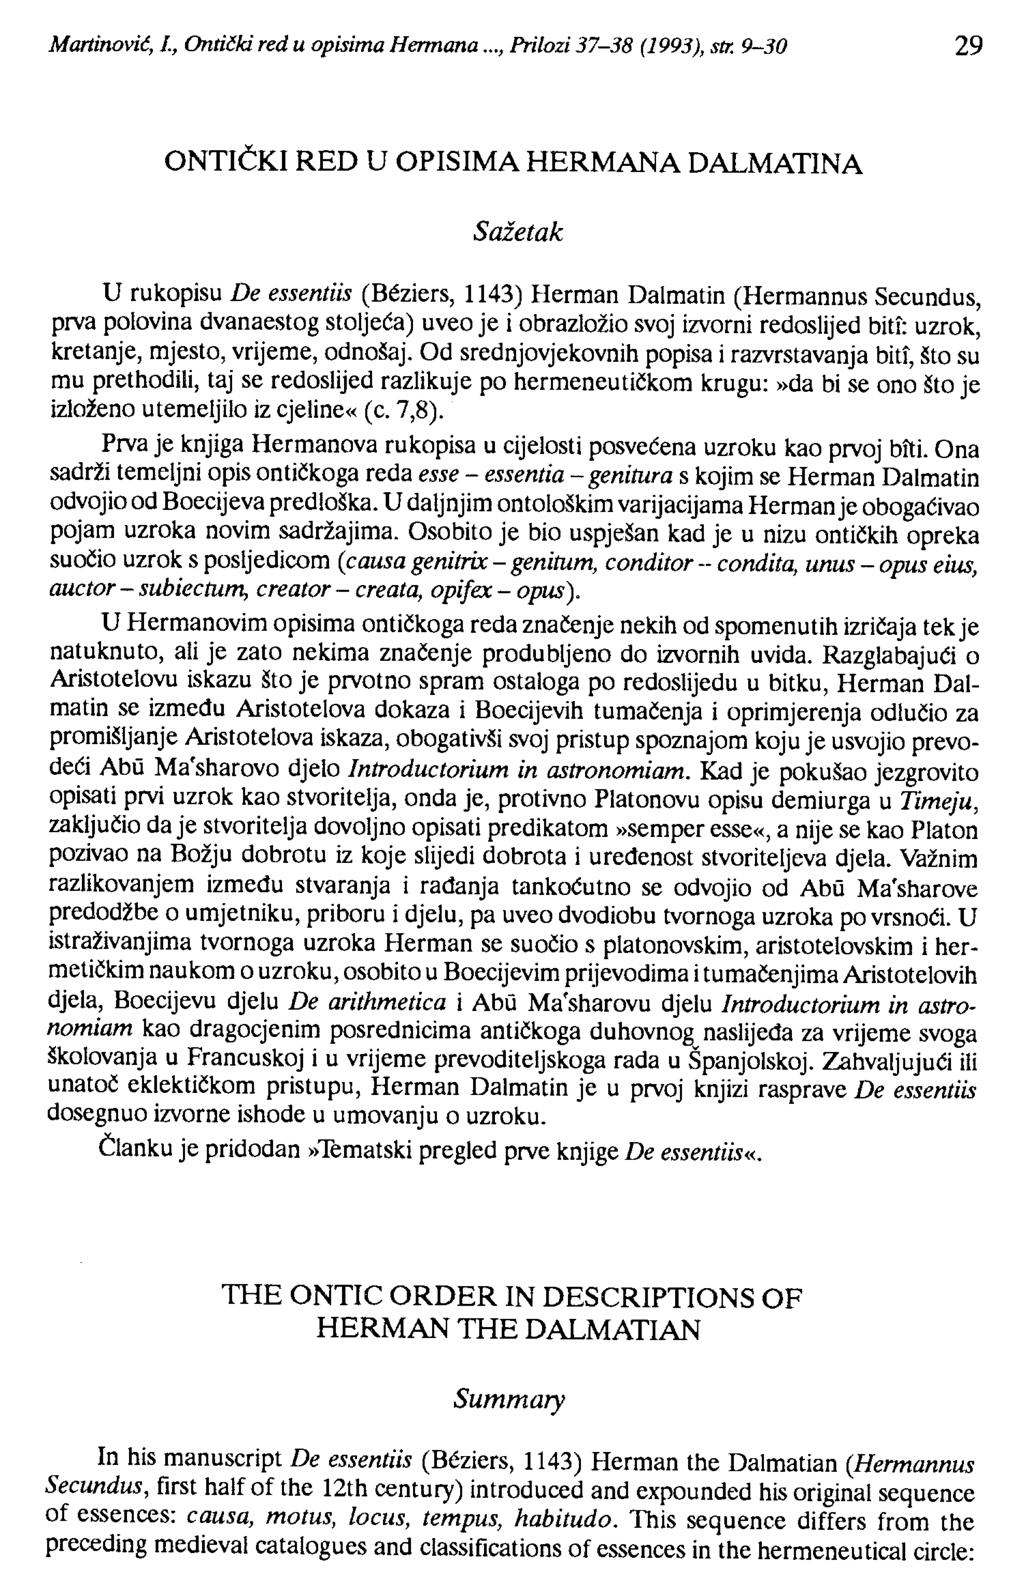 Martinovit, J., Ontički red u opisima Hennana..., Prilozi 37-38 (1993), str.